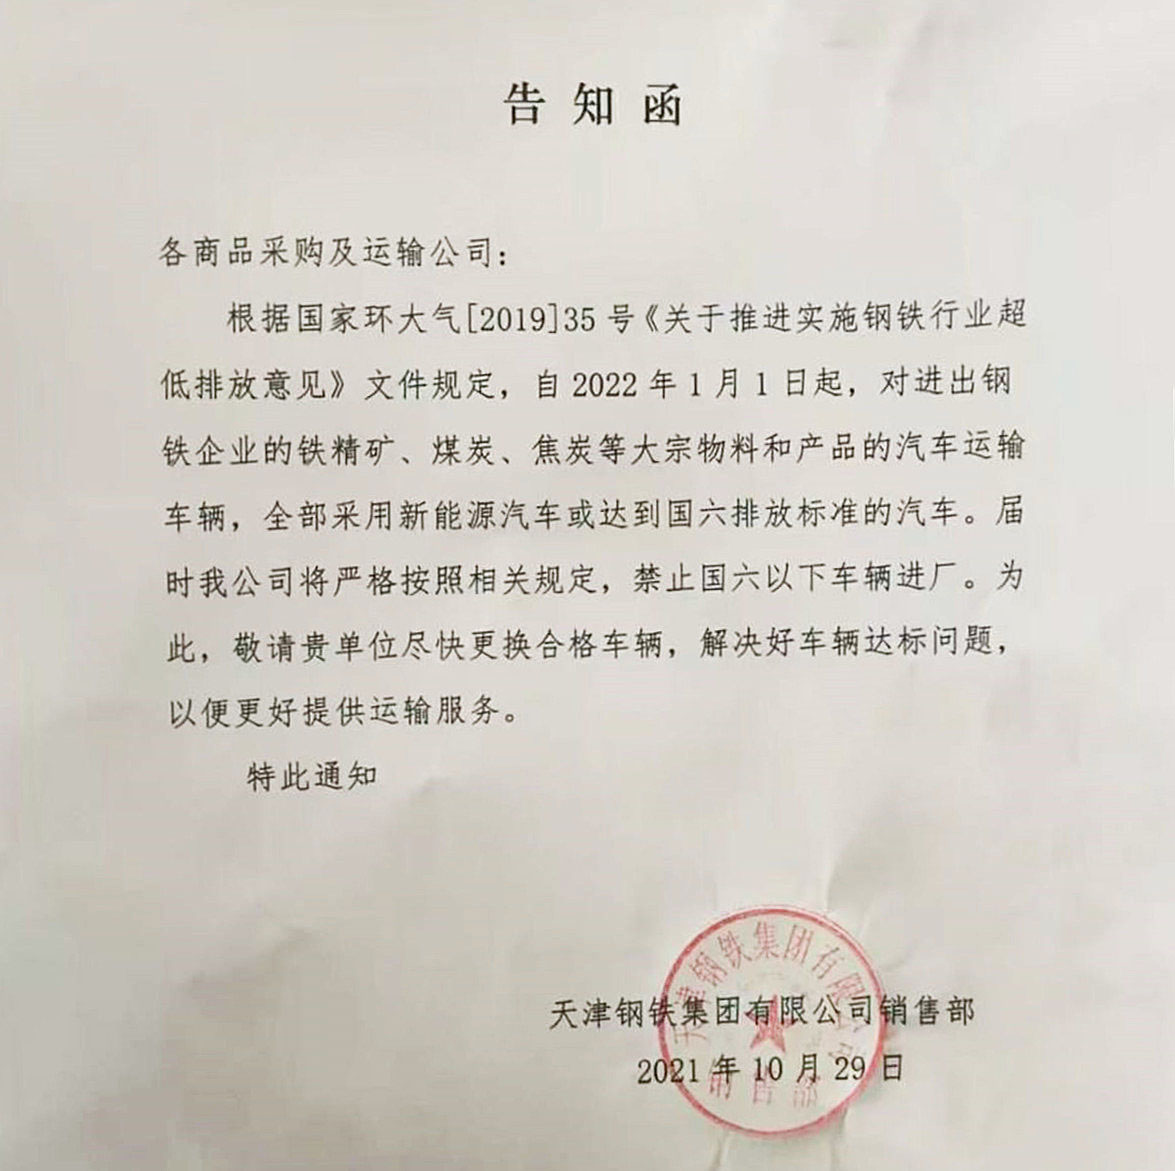 天津市钢铁集团下发的禁行文件